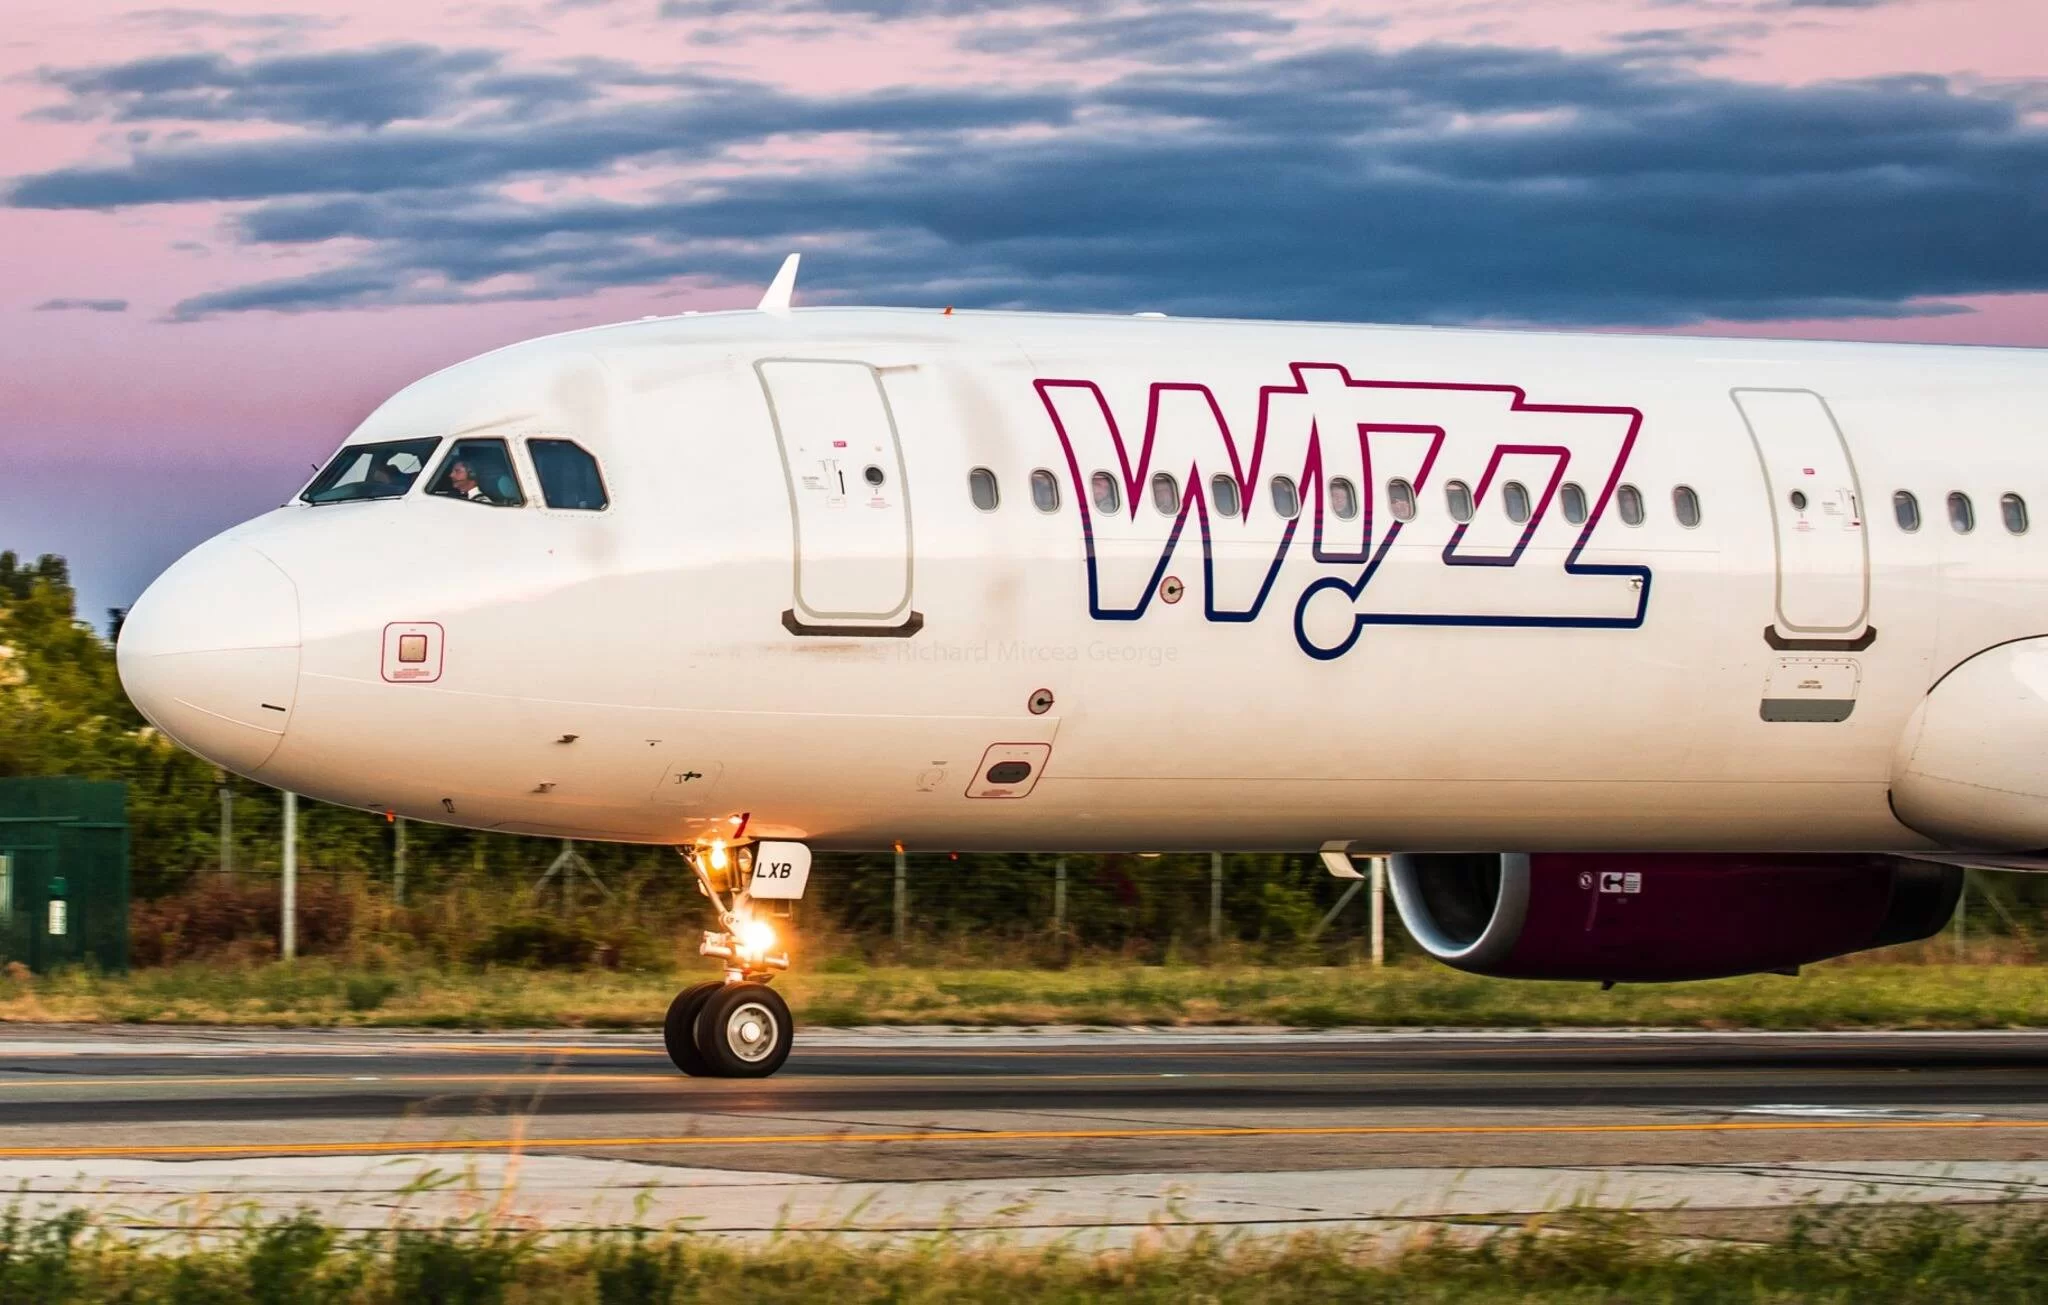 Fluturimi i parë direkt ndërmjet Tiranës dhe Bukureshtit nis nga tetori 2023 me Wizz Air